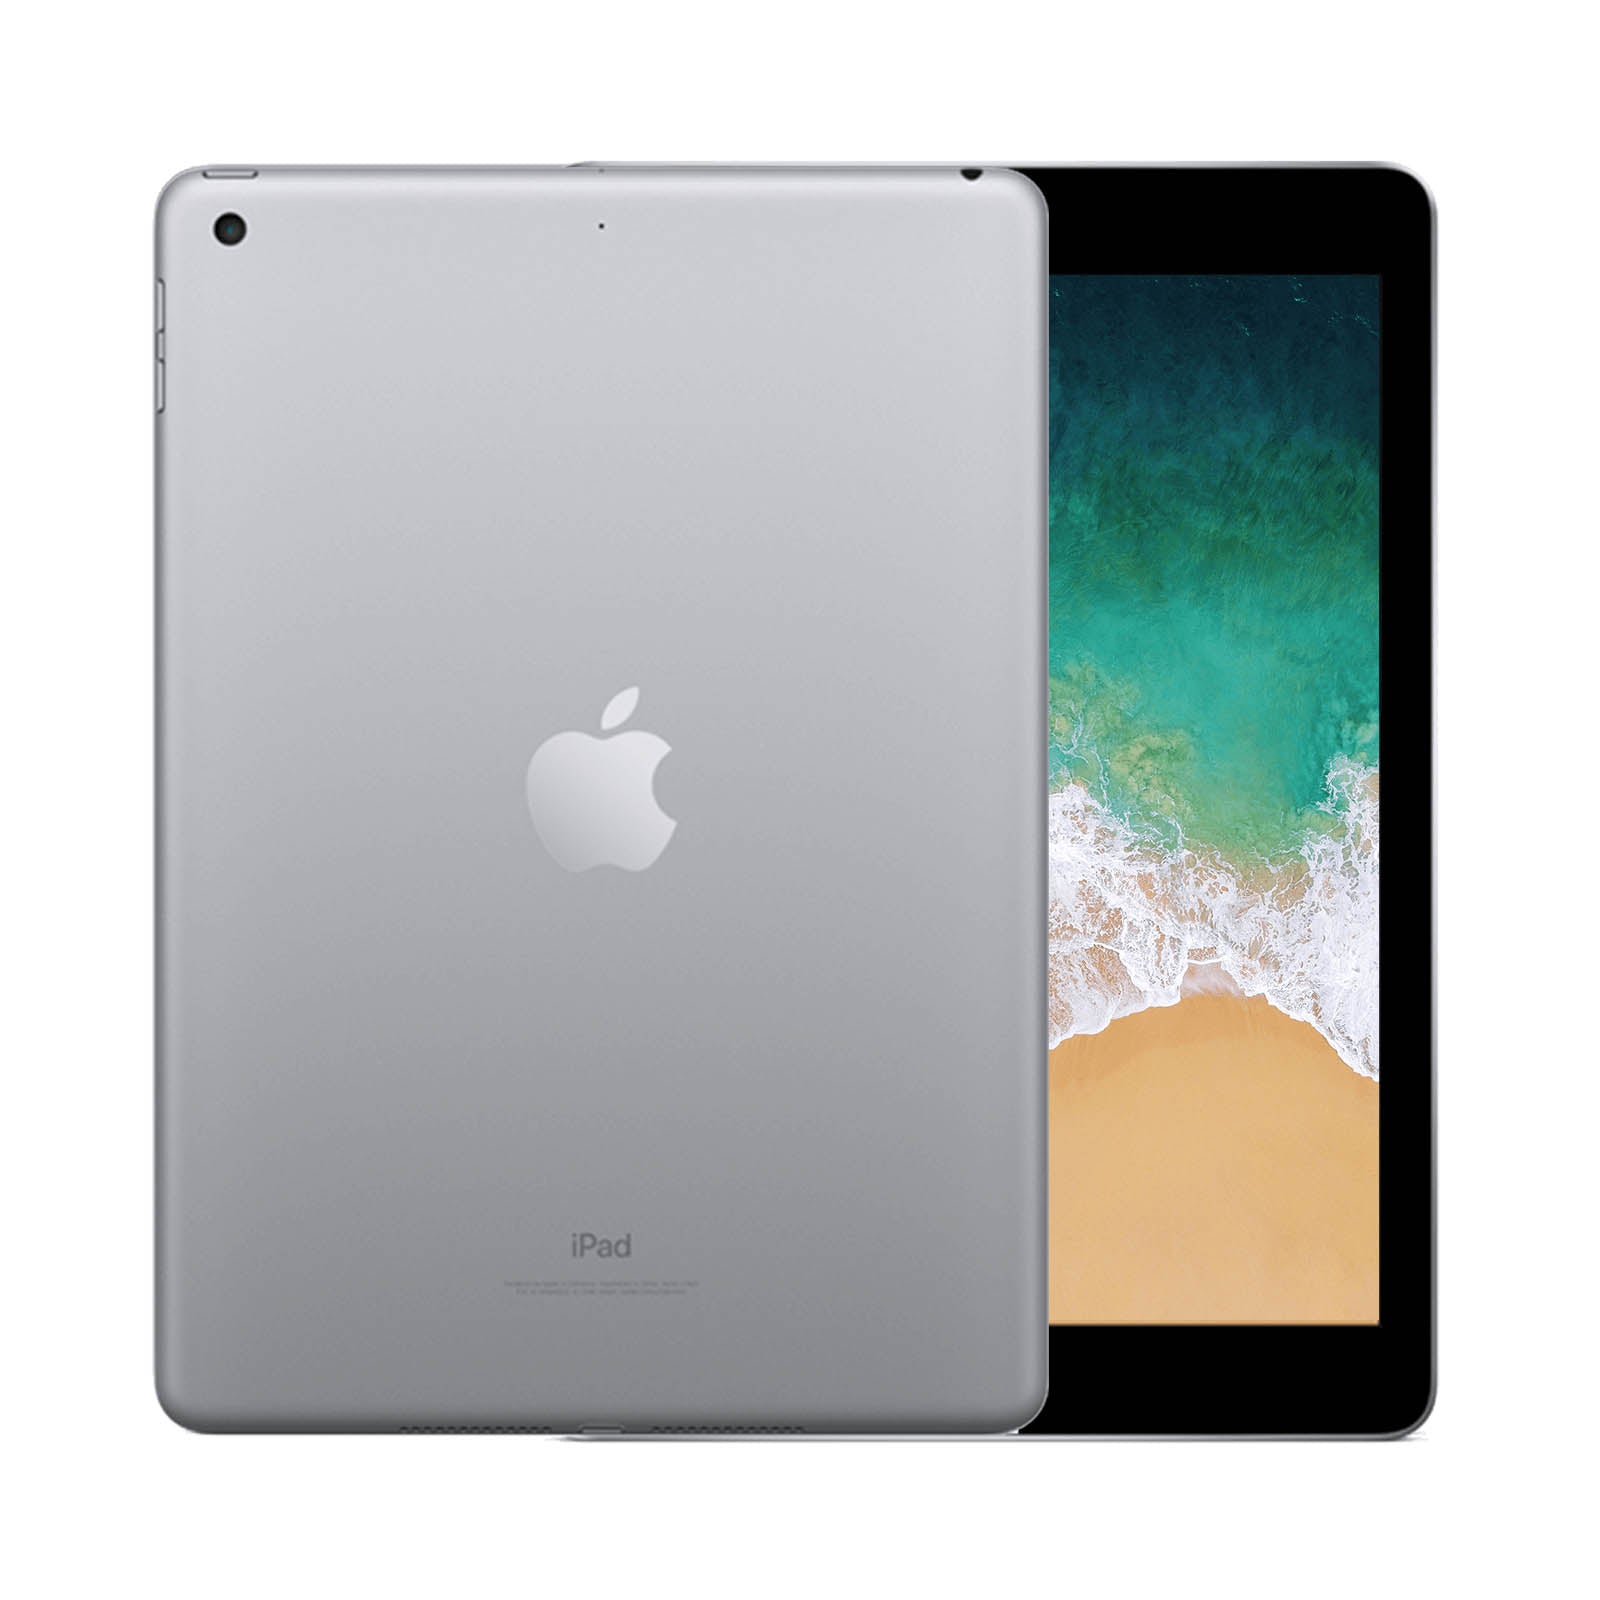 Apple iPad 5 128GB WiFi Space Grey - Good